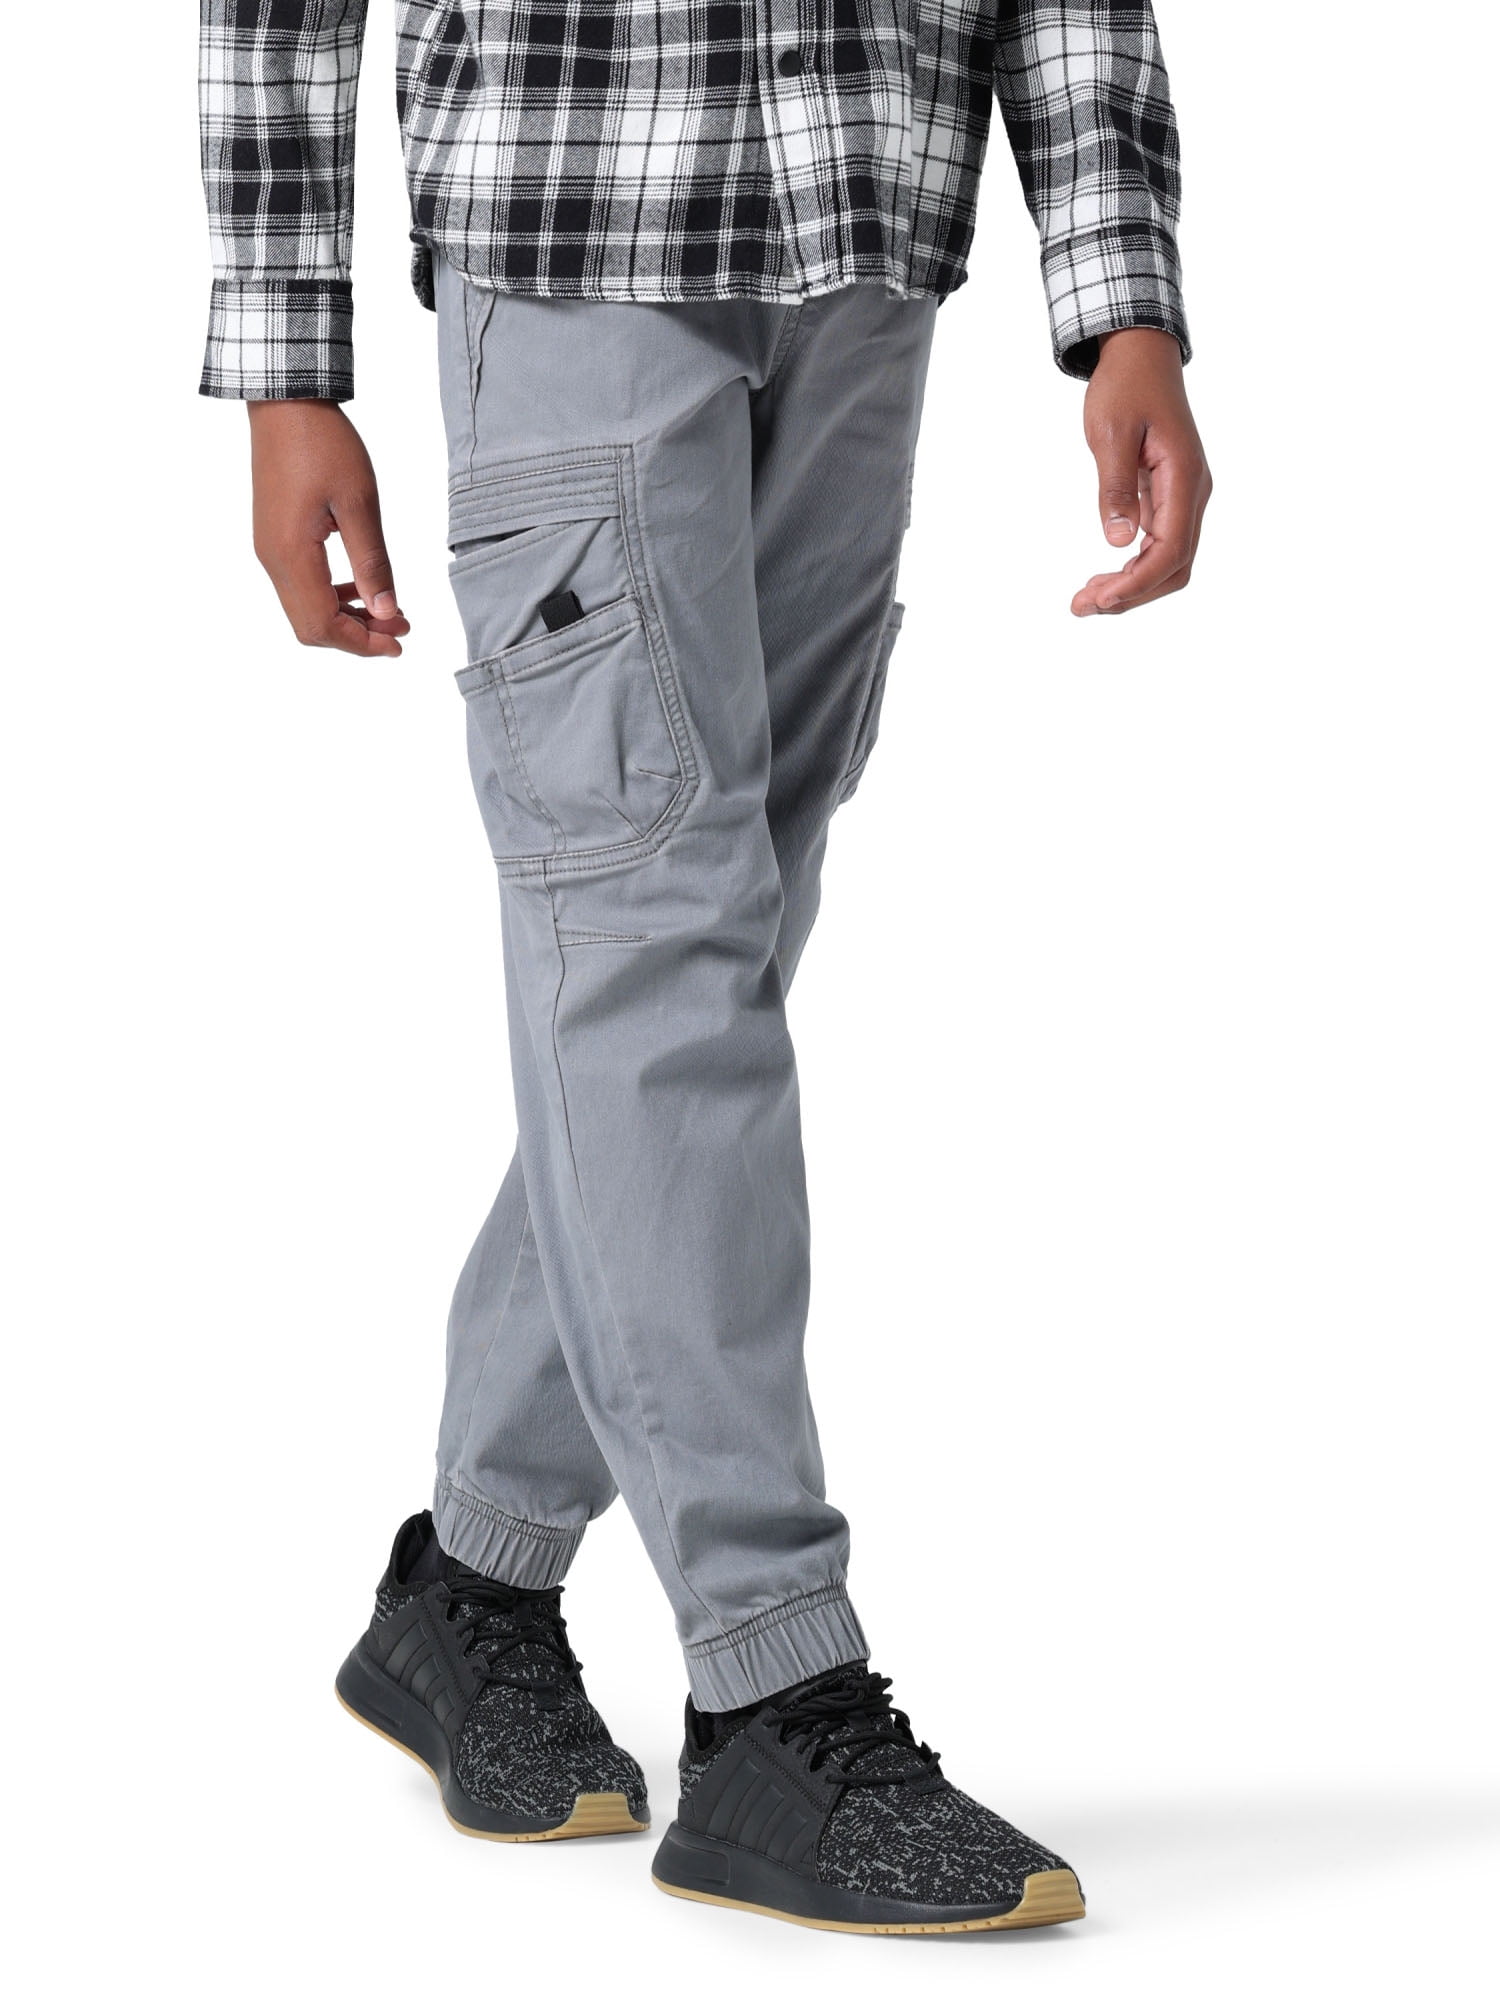 Wrangler Boy's Gamer Cargo Pants, Sizes 4-16, Slim & Husky